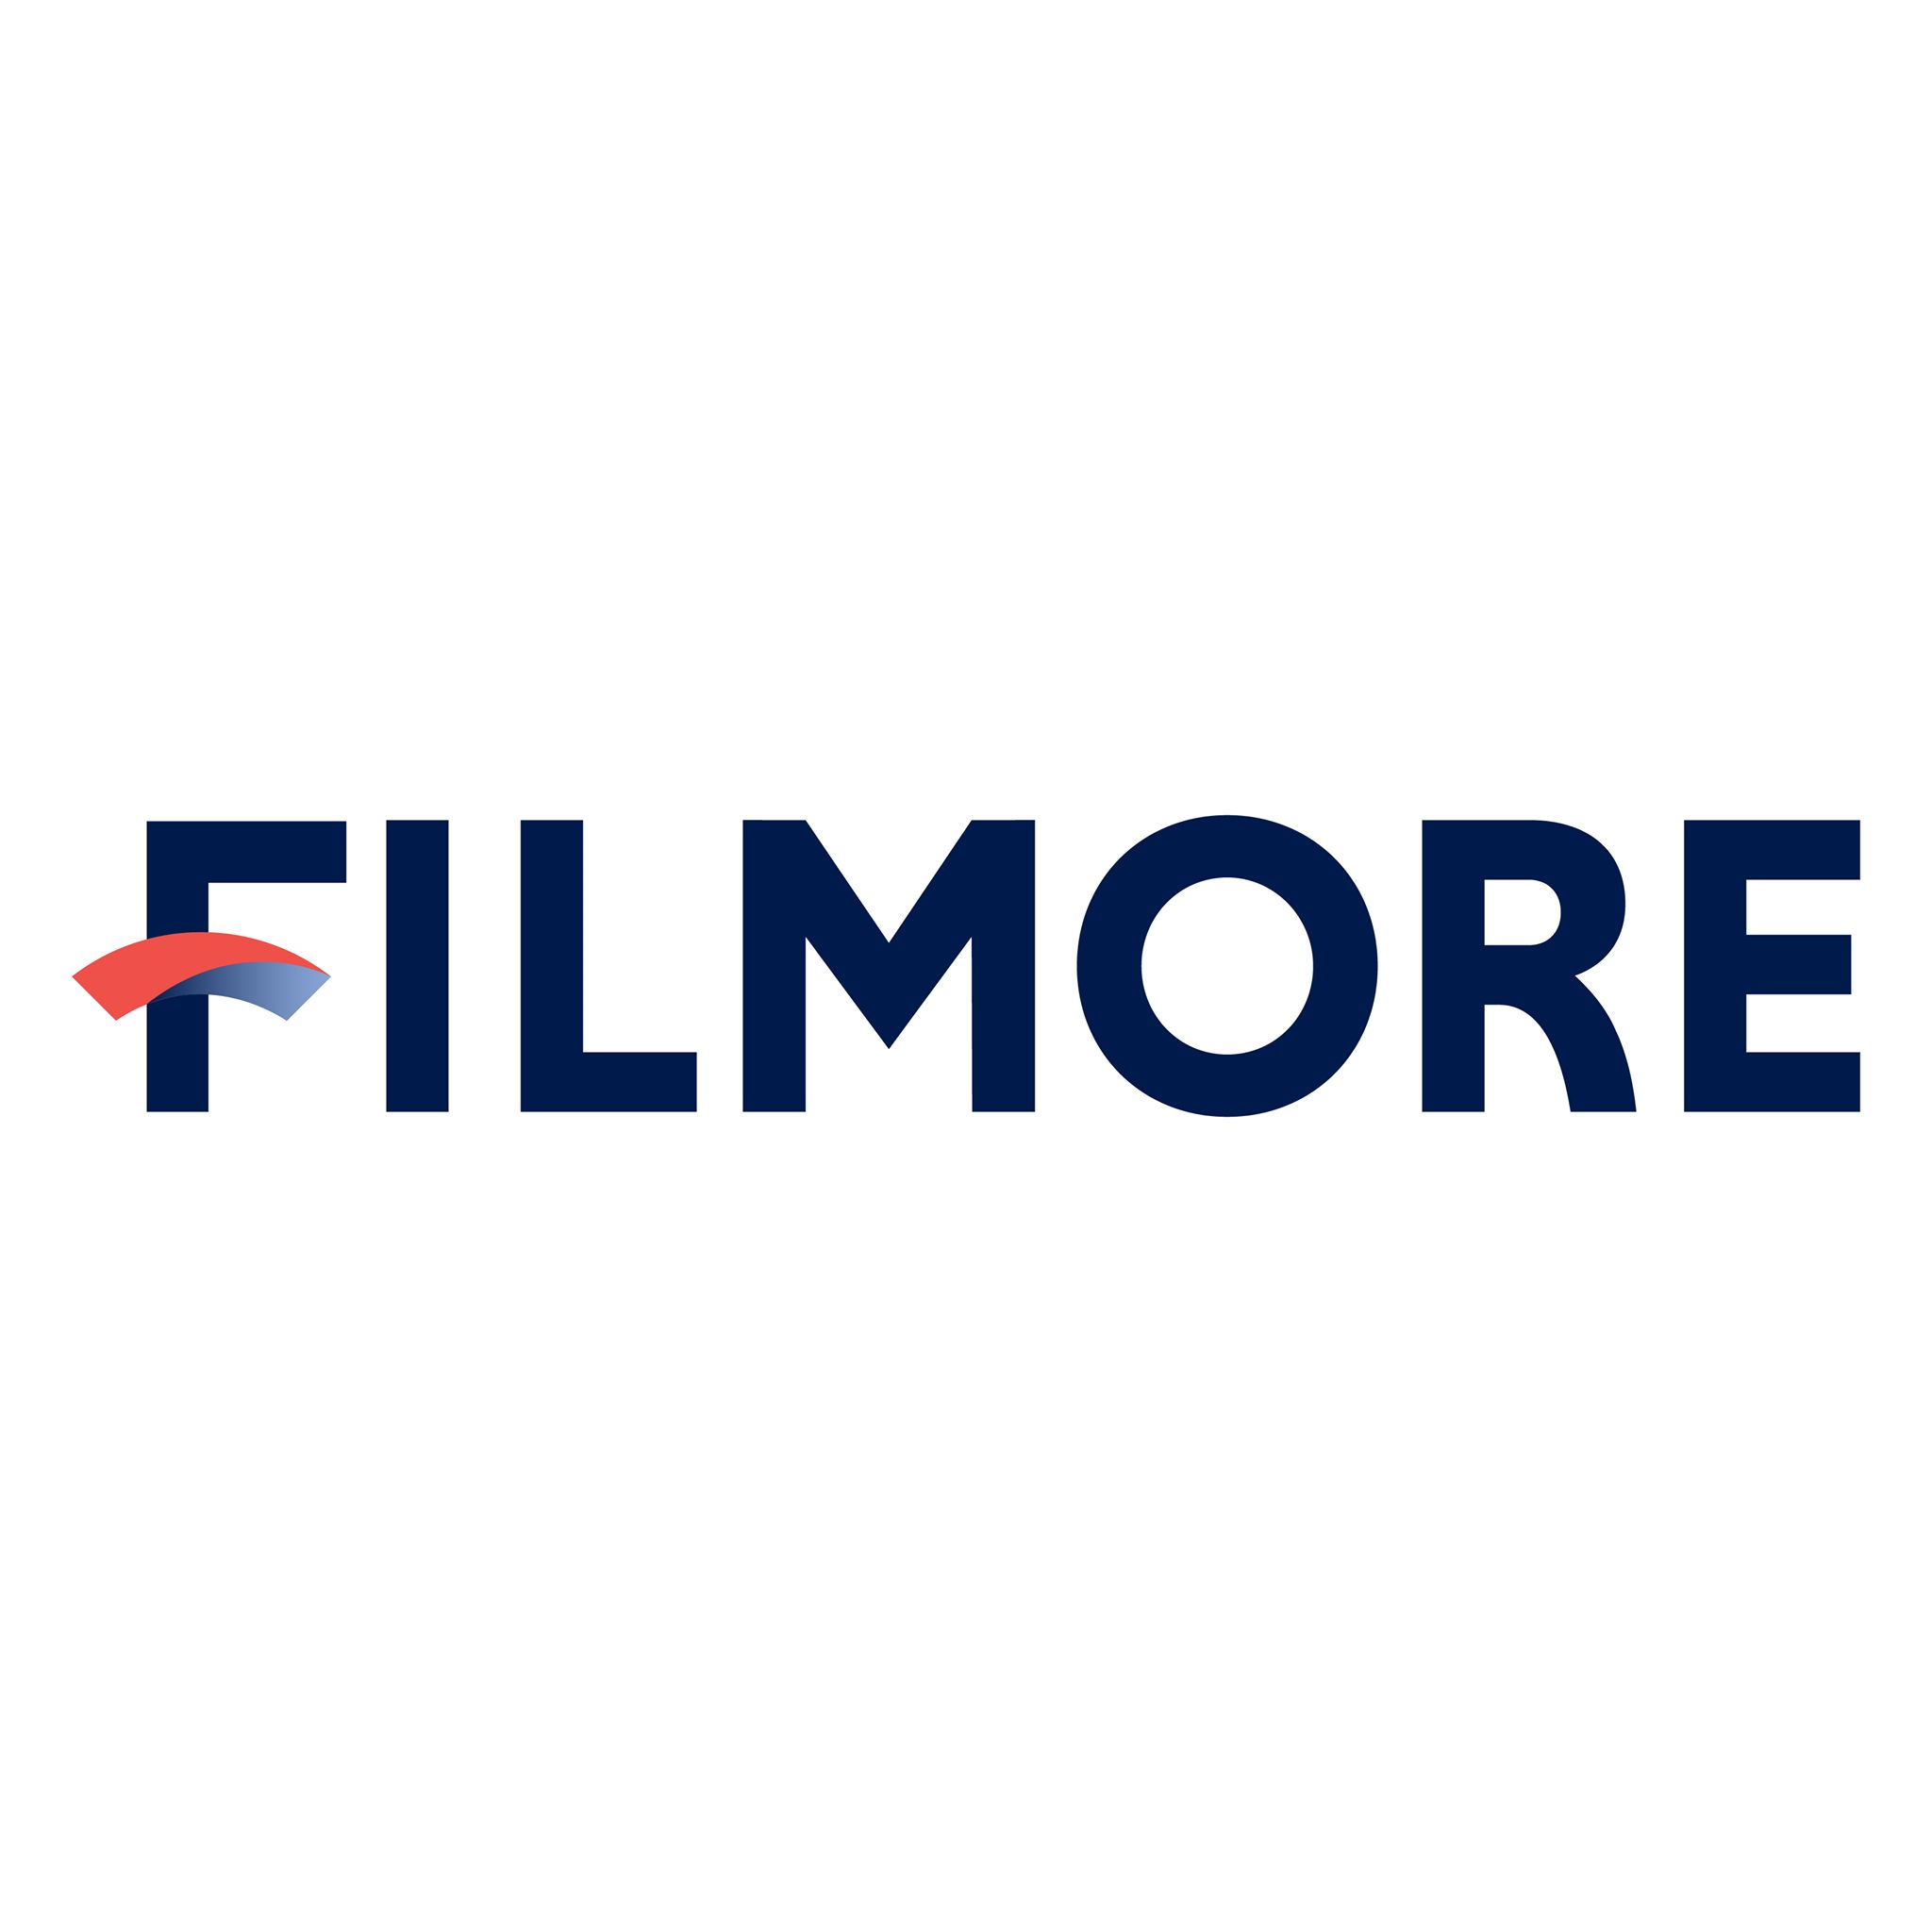 Logo Công ty Cổ phần Phát triển Bất động sản Filmore